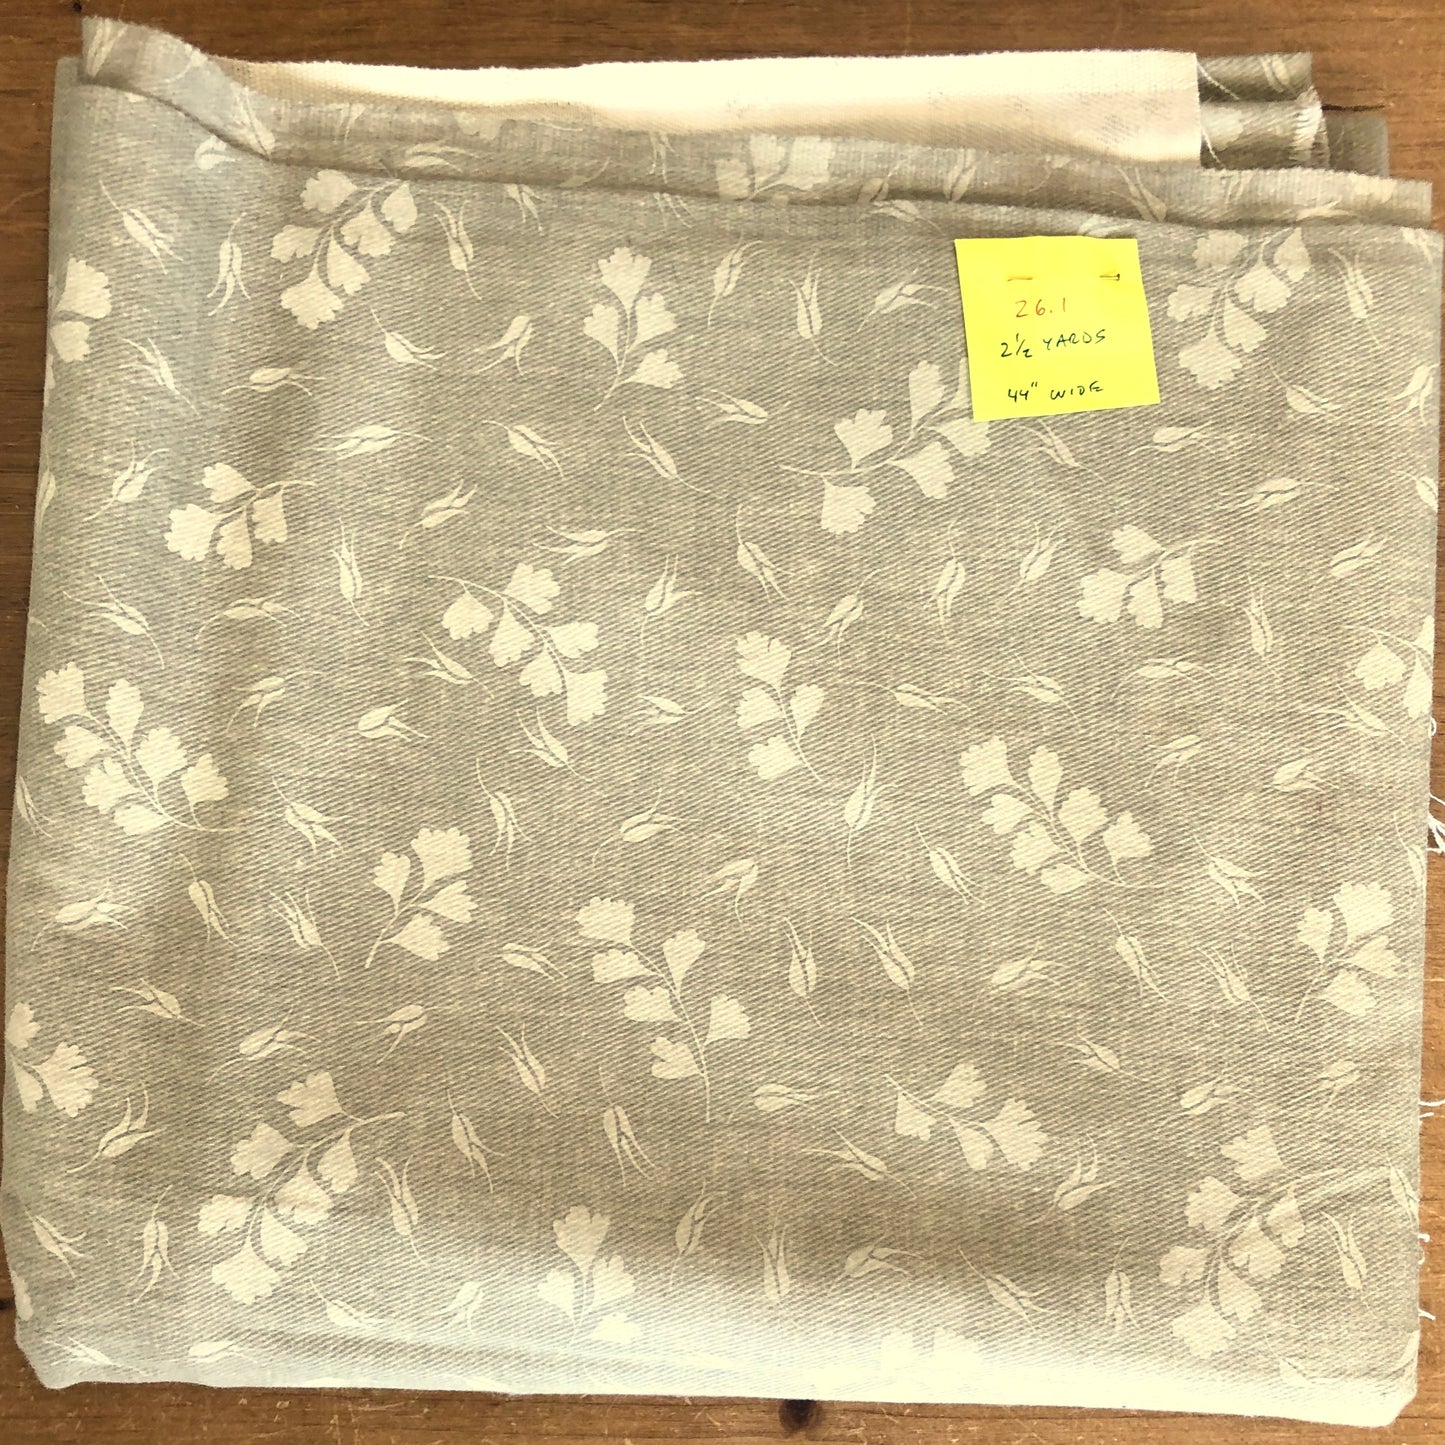 Scattered Ginkgo Leaves on Brushed Denim Fabric - Vintage